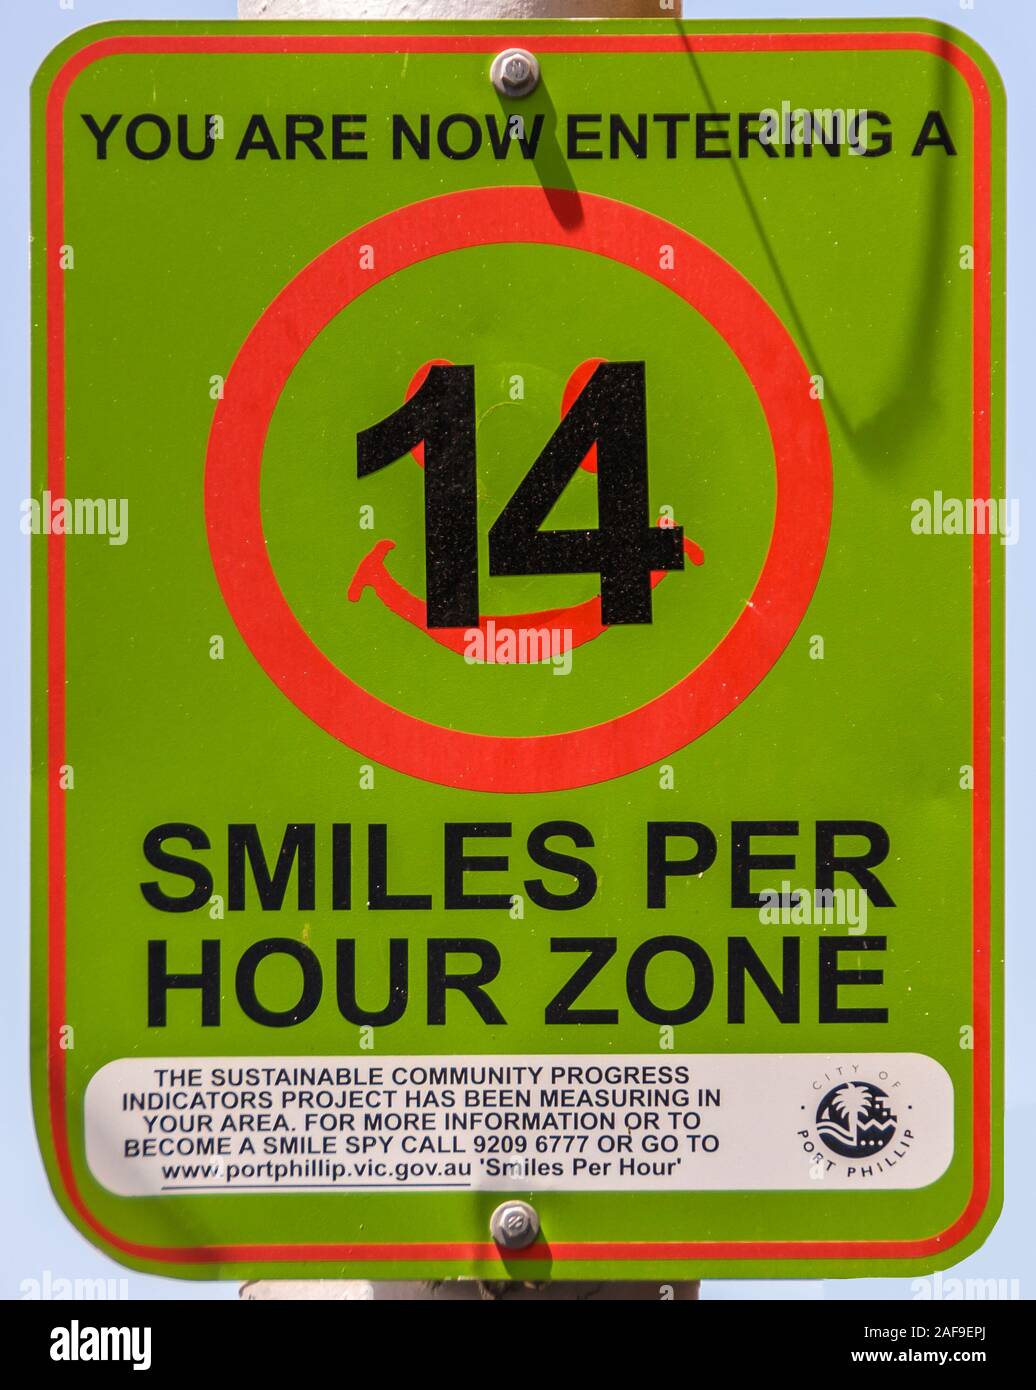 Melbourne, Australien - 17. November 2009: Grüne und rote Ampel bei der Bekanntgabe der Rate des Lächelns pro Stunde in einer bestimmten Zone in der Stadt Port Philip. Stockfoto